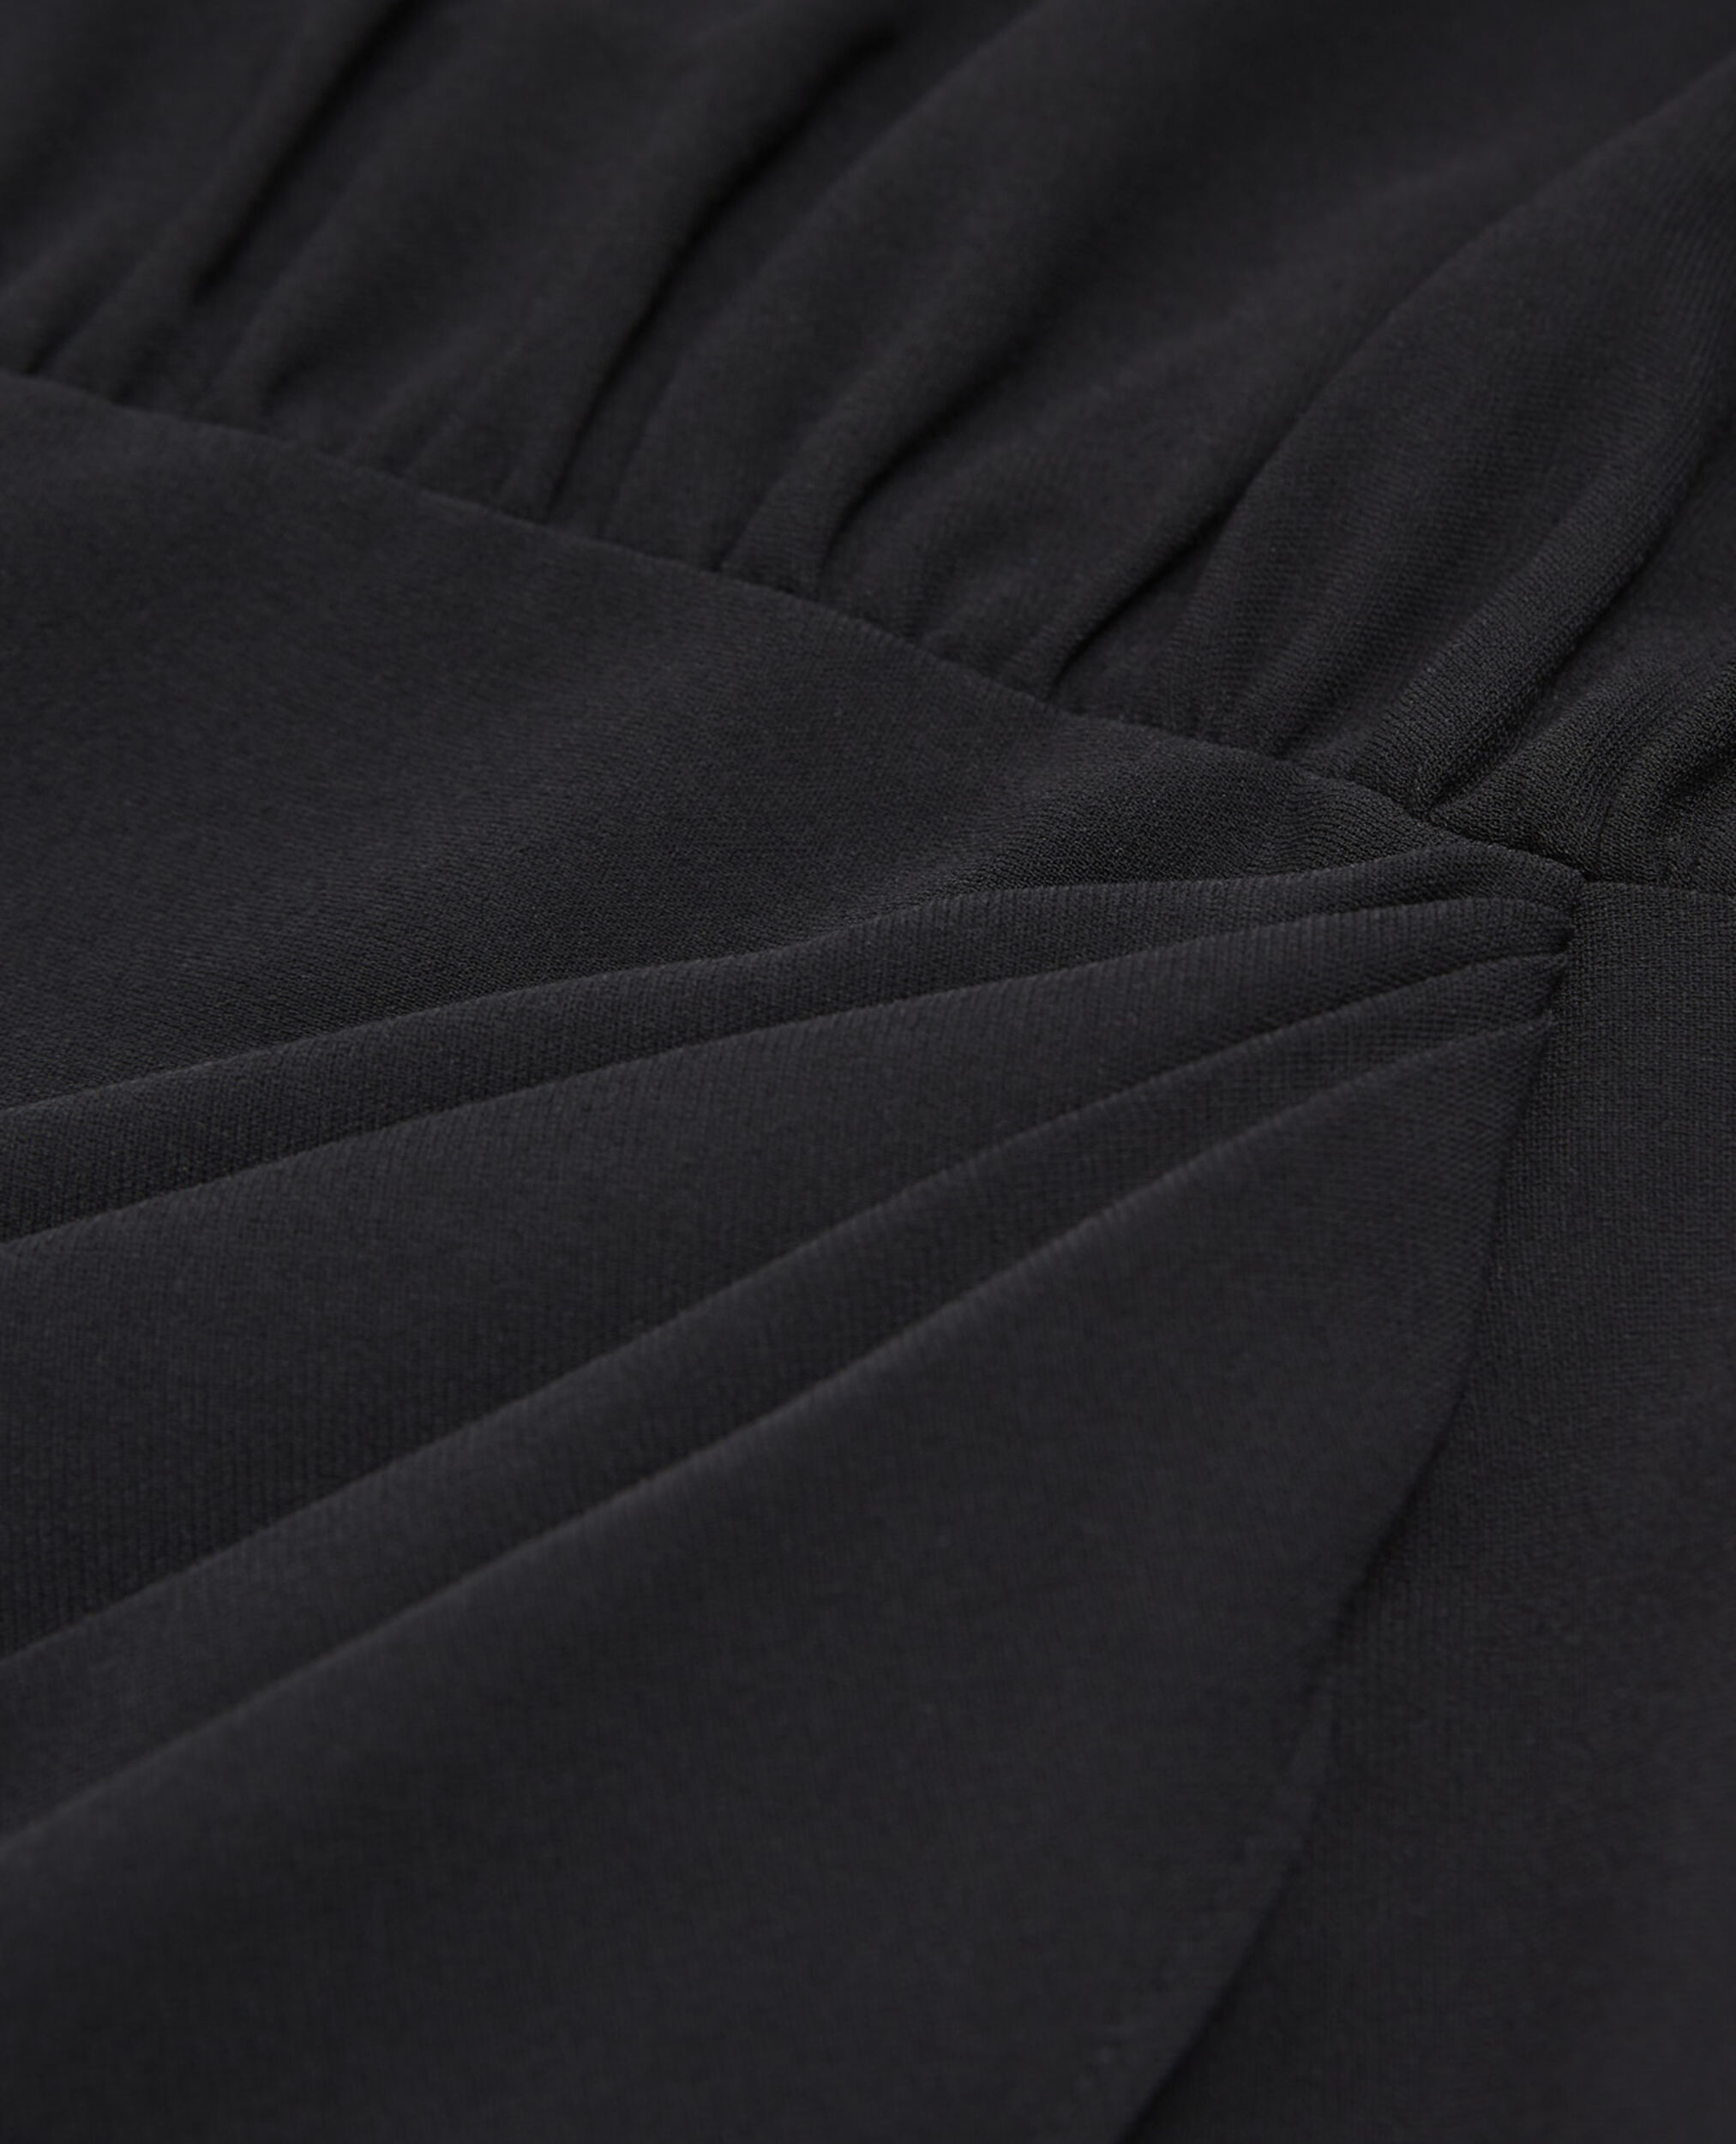 Vestido corto negro crepé cruzado, BLACK, hi-res image number null